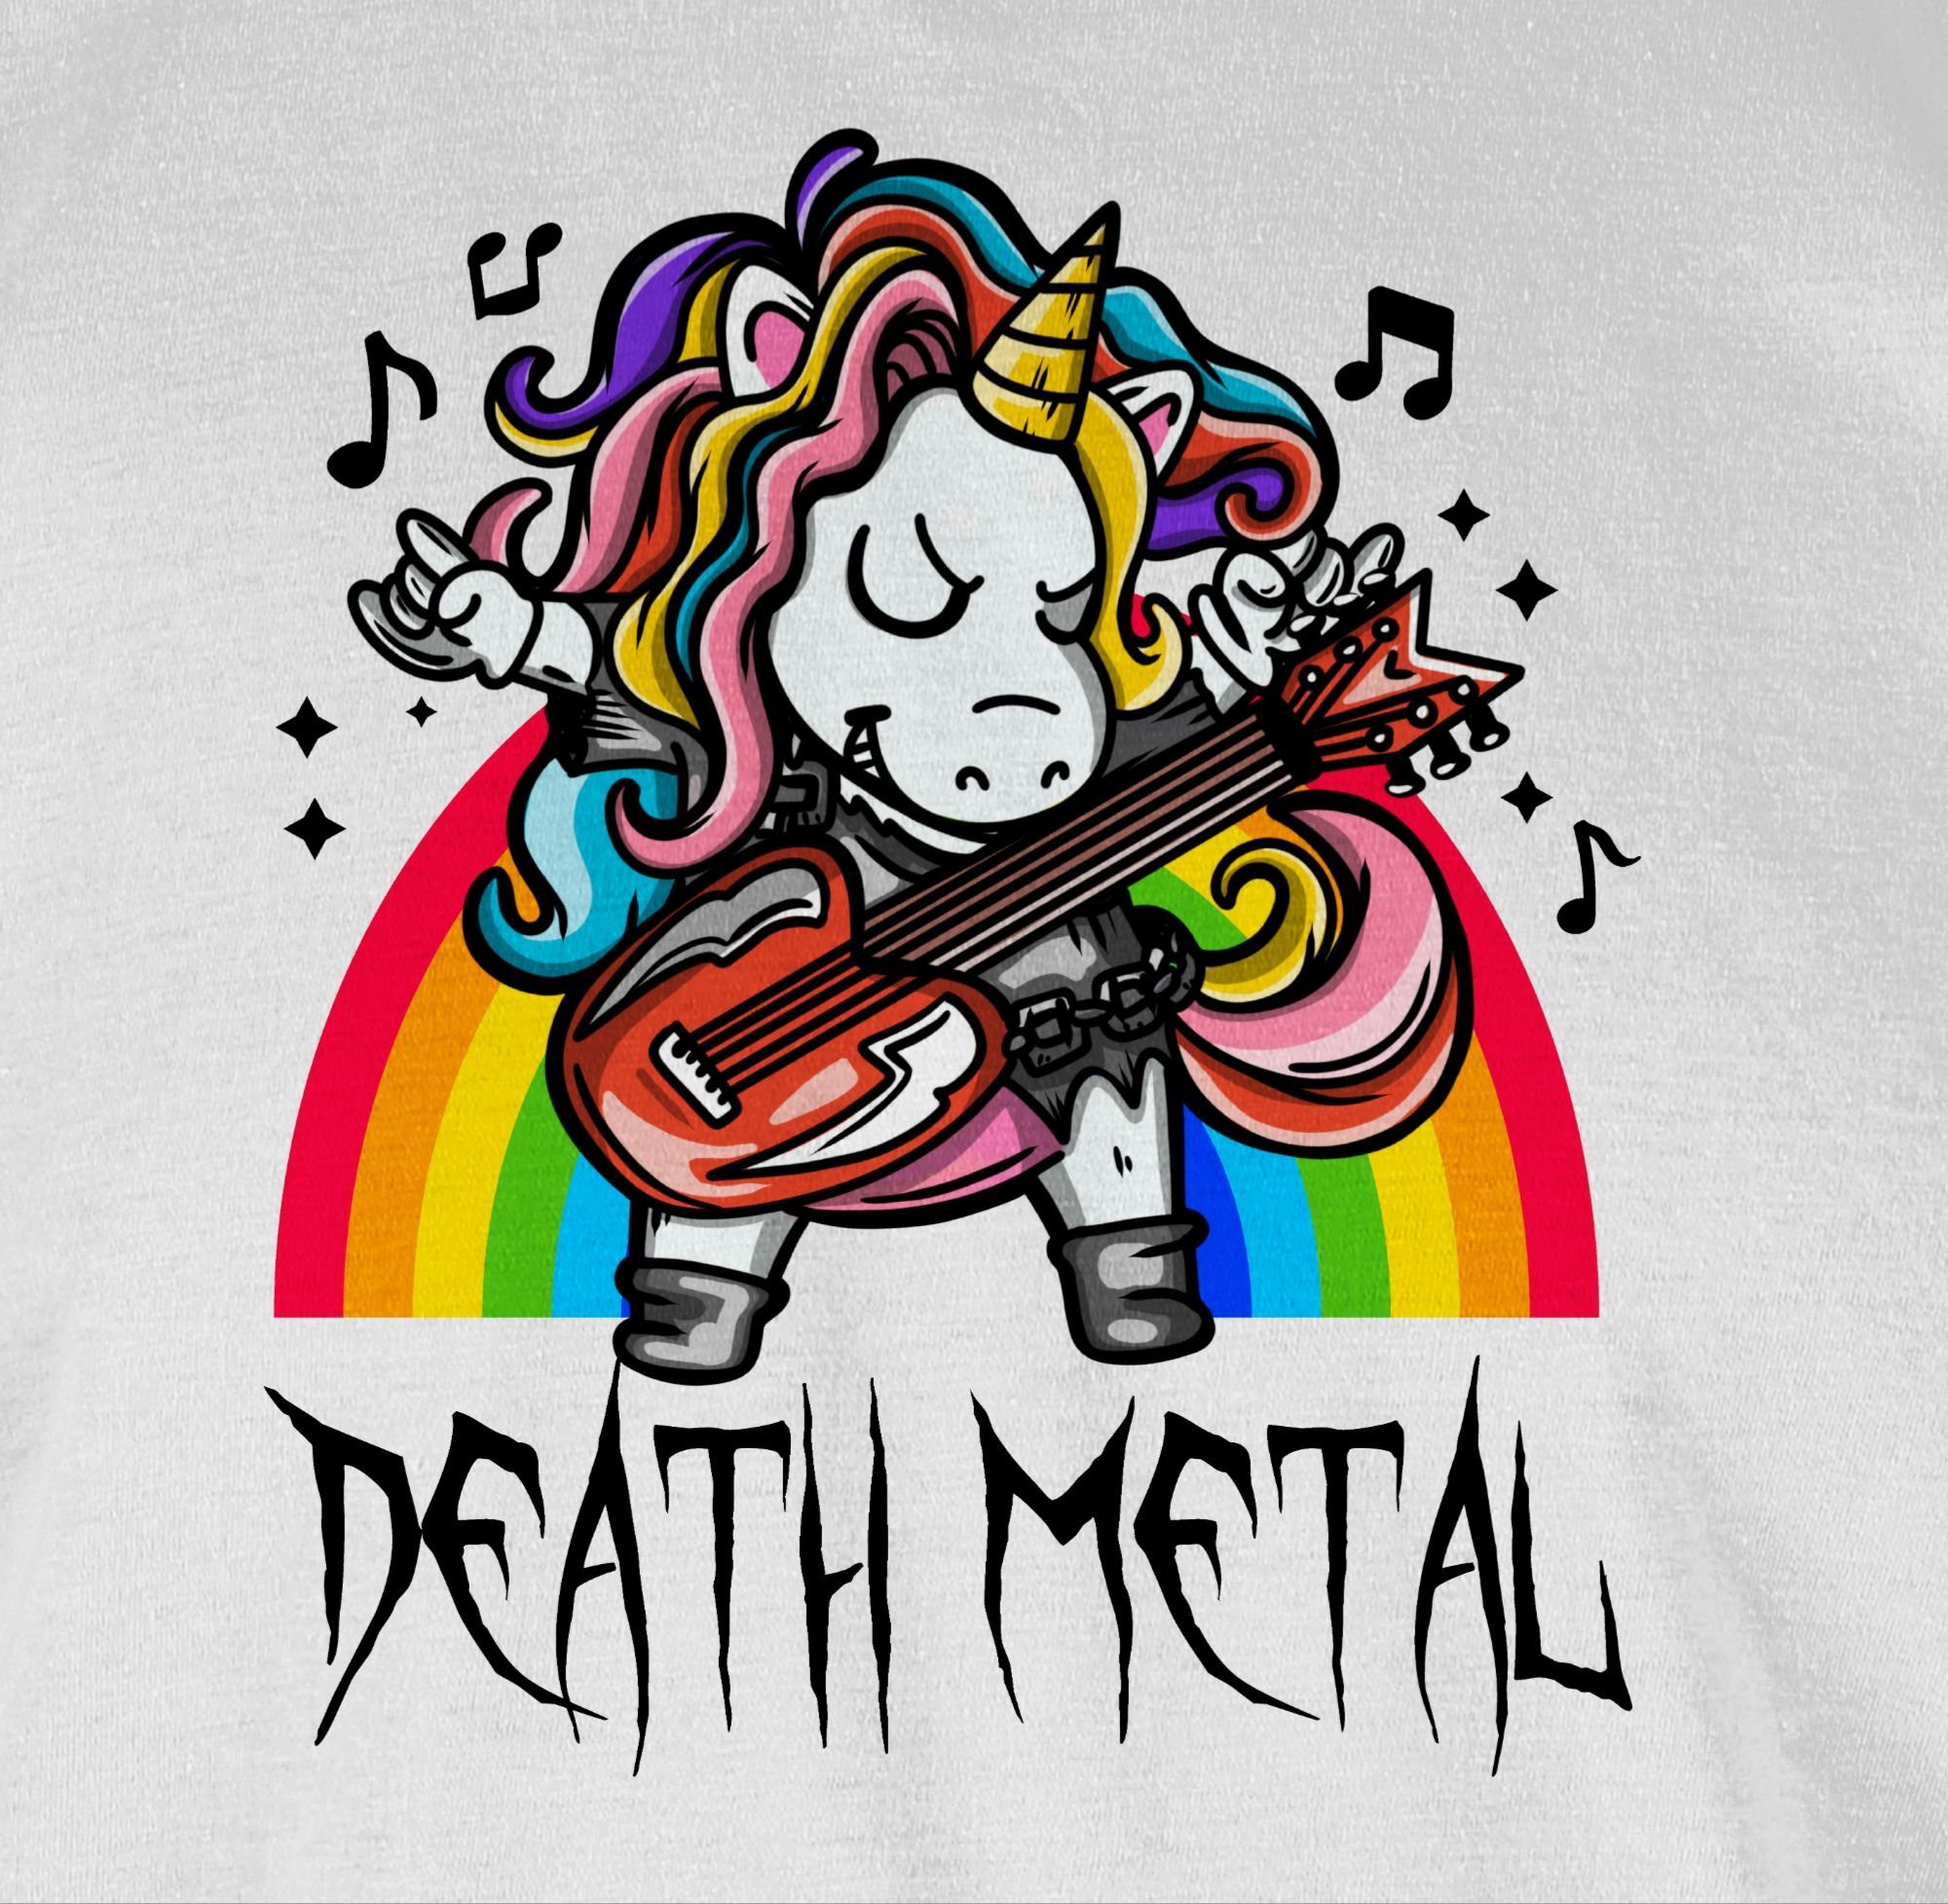 Weiß Metal - 2 T-Shirt Einhorn Metal Unicorn Geschenke Shirtracer Heavy Death